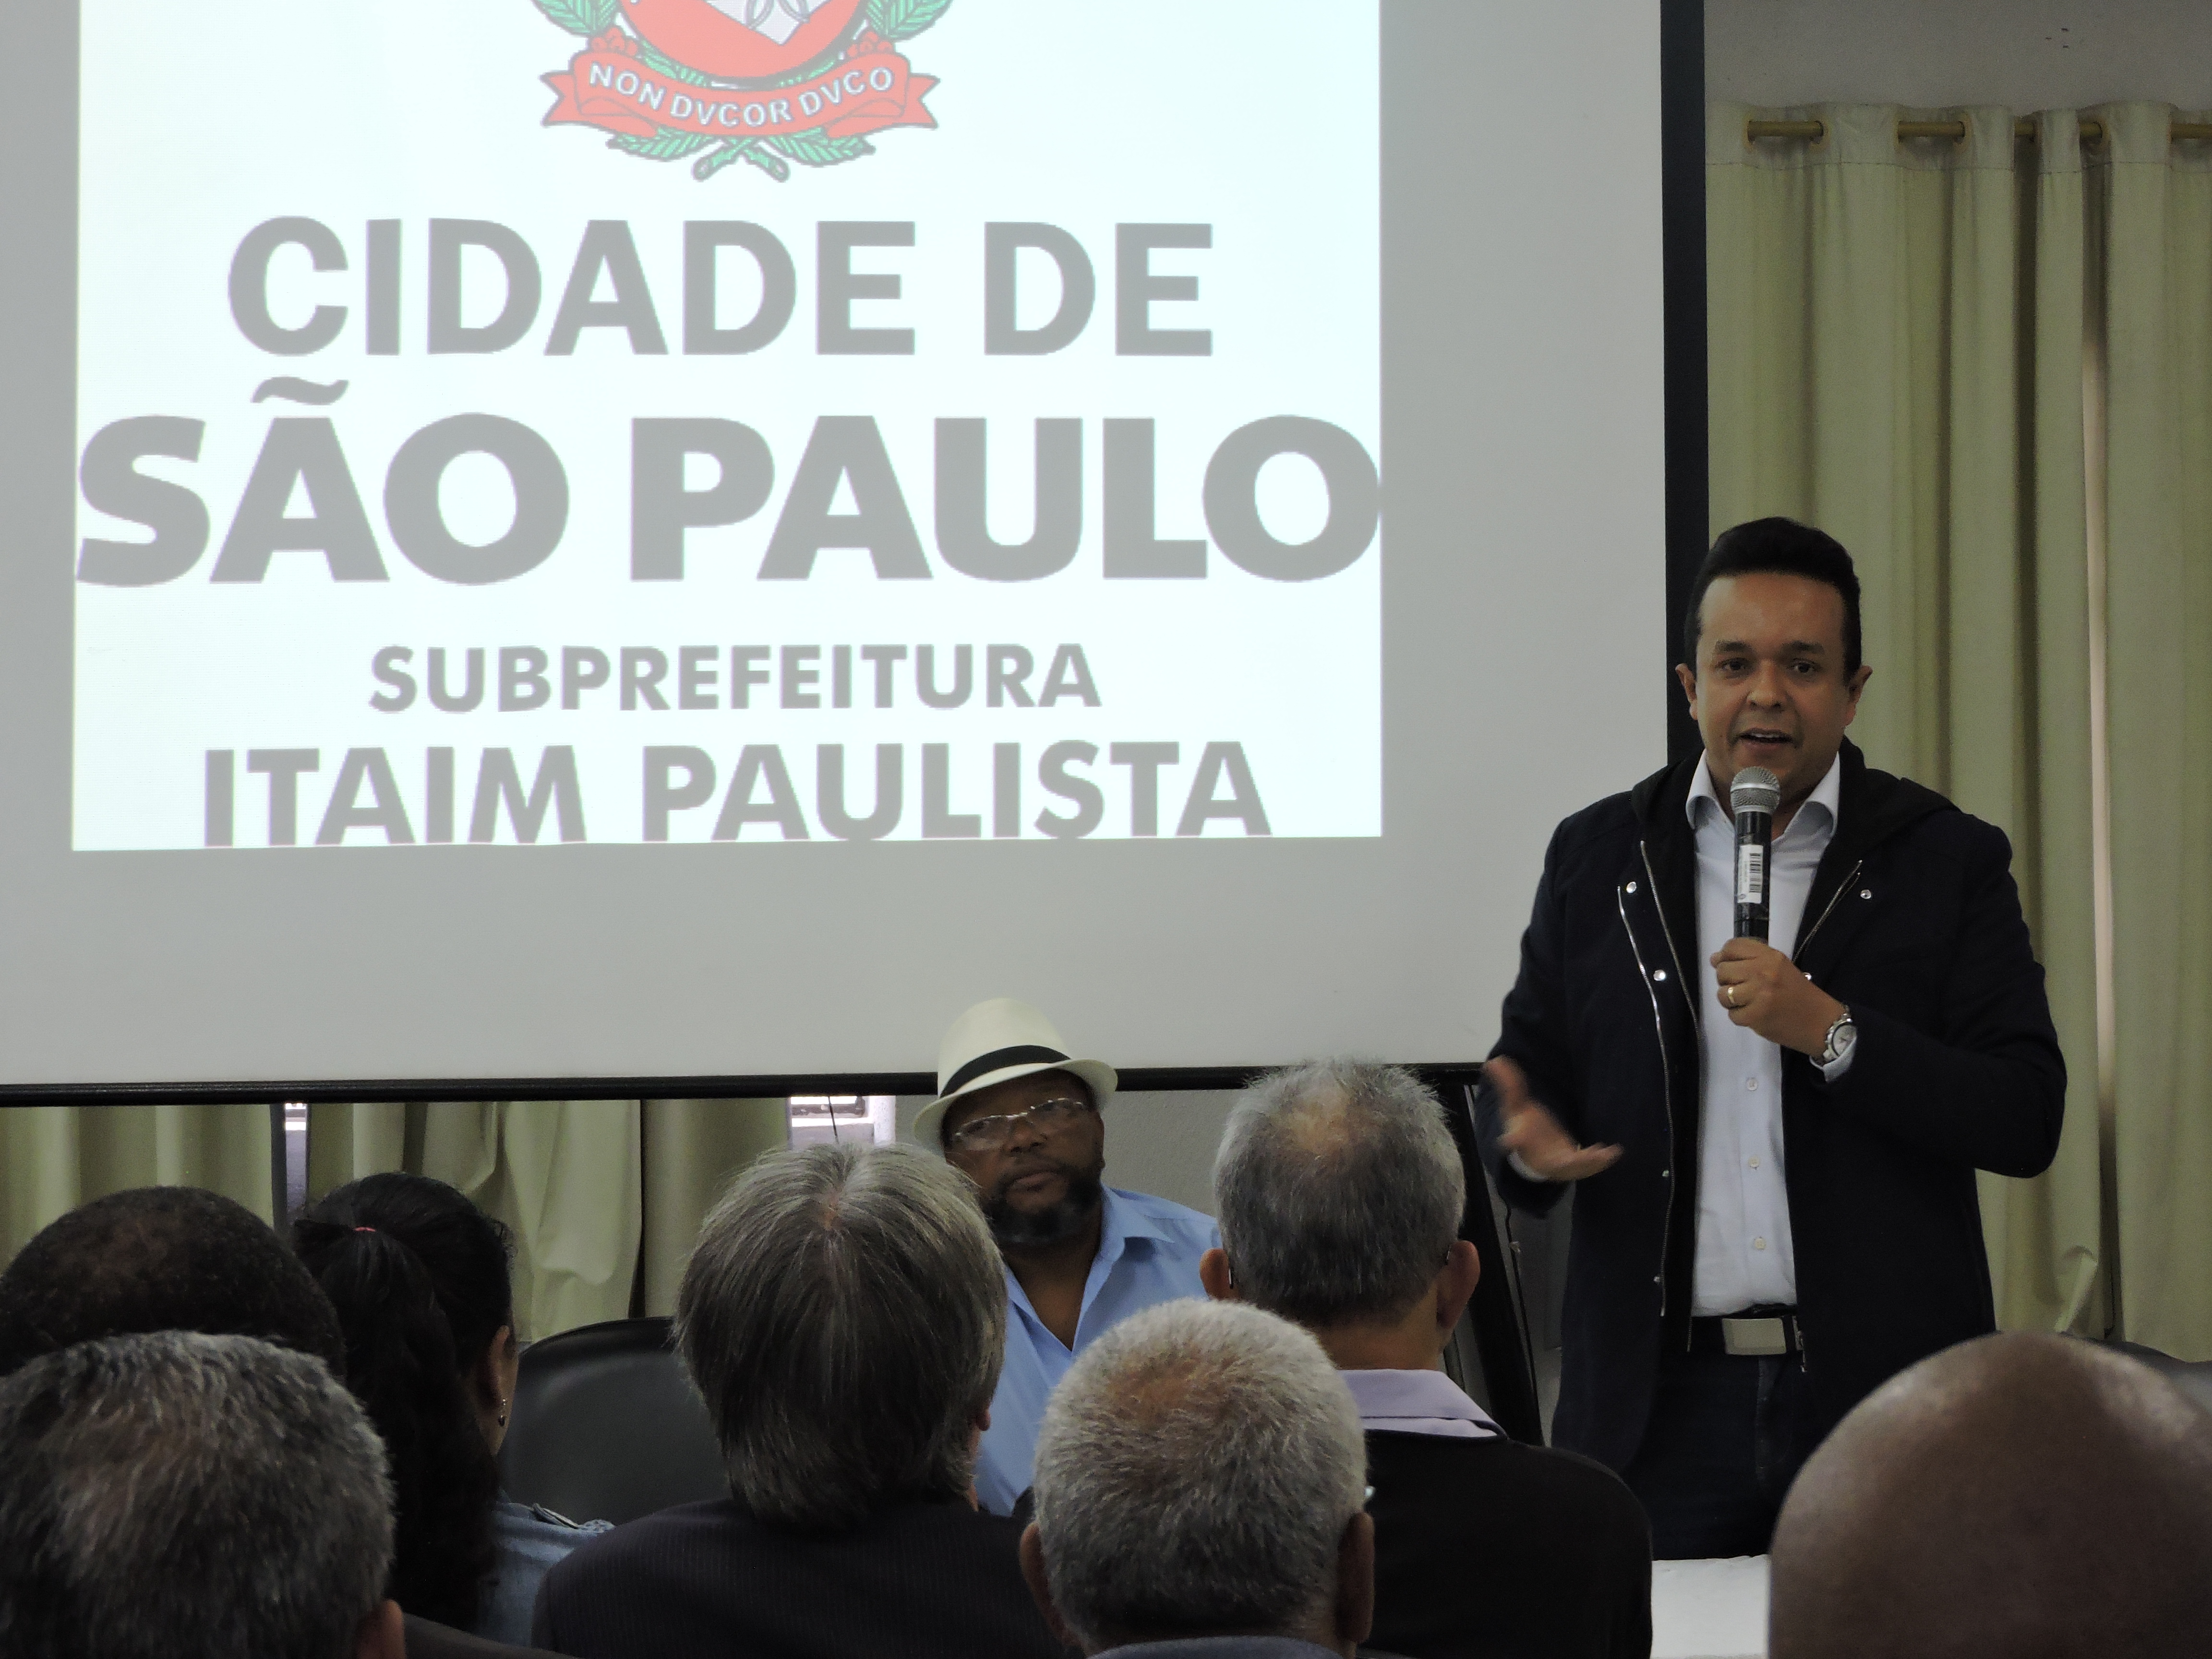 No primeiro plano da foto aparecem cabeças de pessoas sentadas observando o subprefeito Gilmar Souza Santos falando. Ao fundo dele mostra um painel com o logotipo da subprefeitura Itaim Paulista.